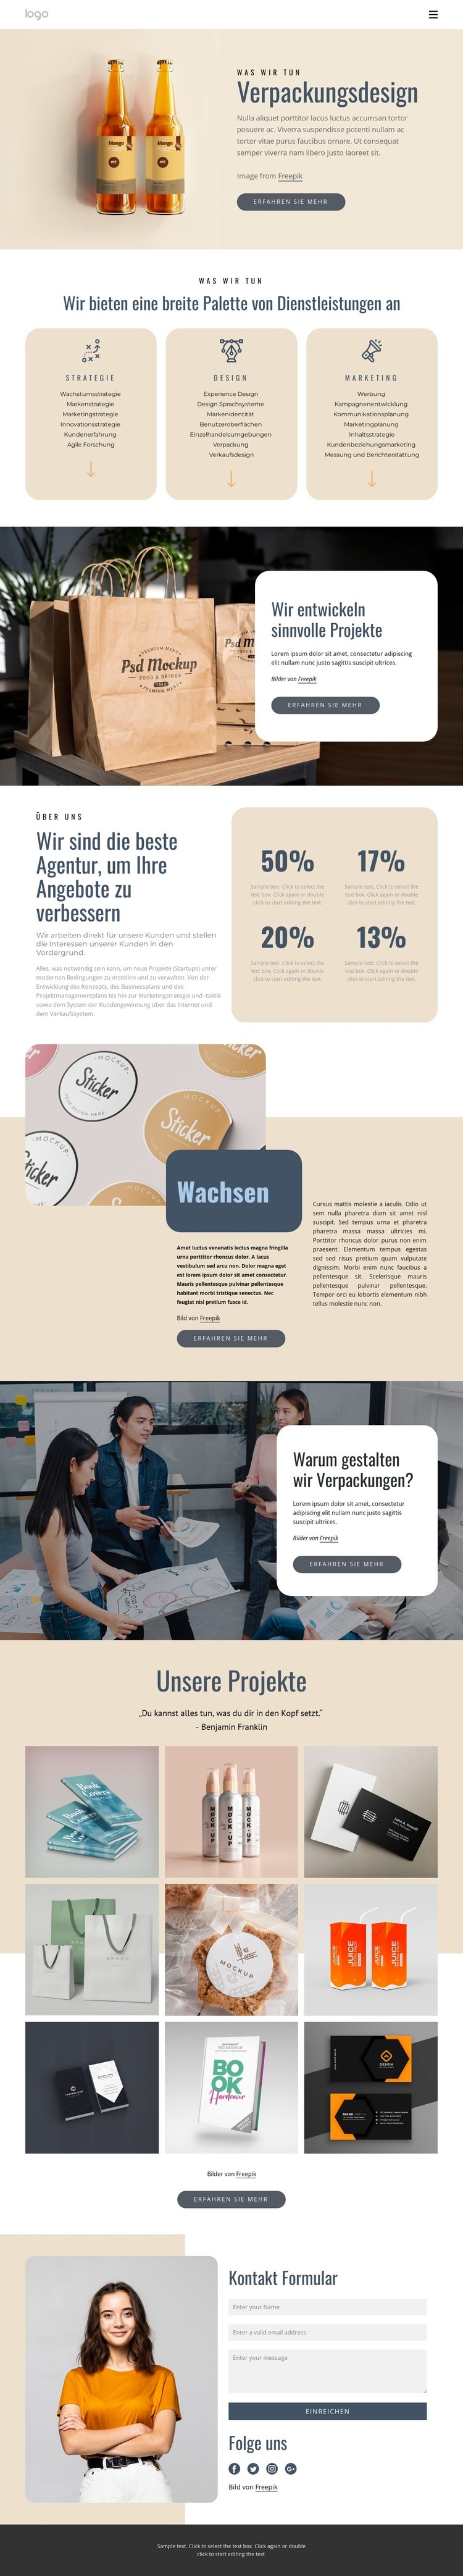 Branding und Verpackungsdesign Website-Modell